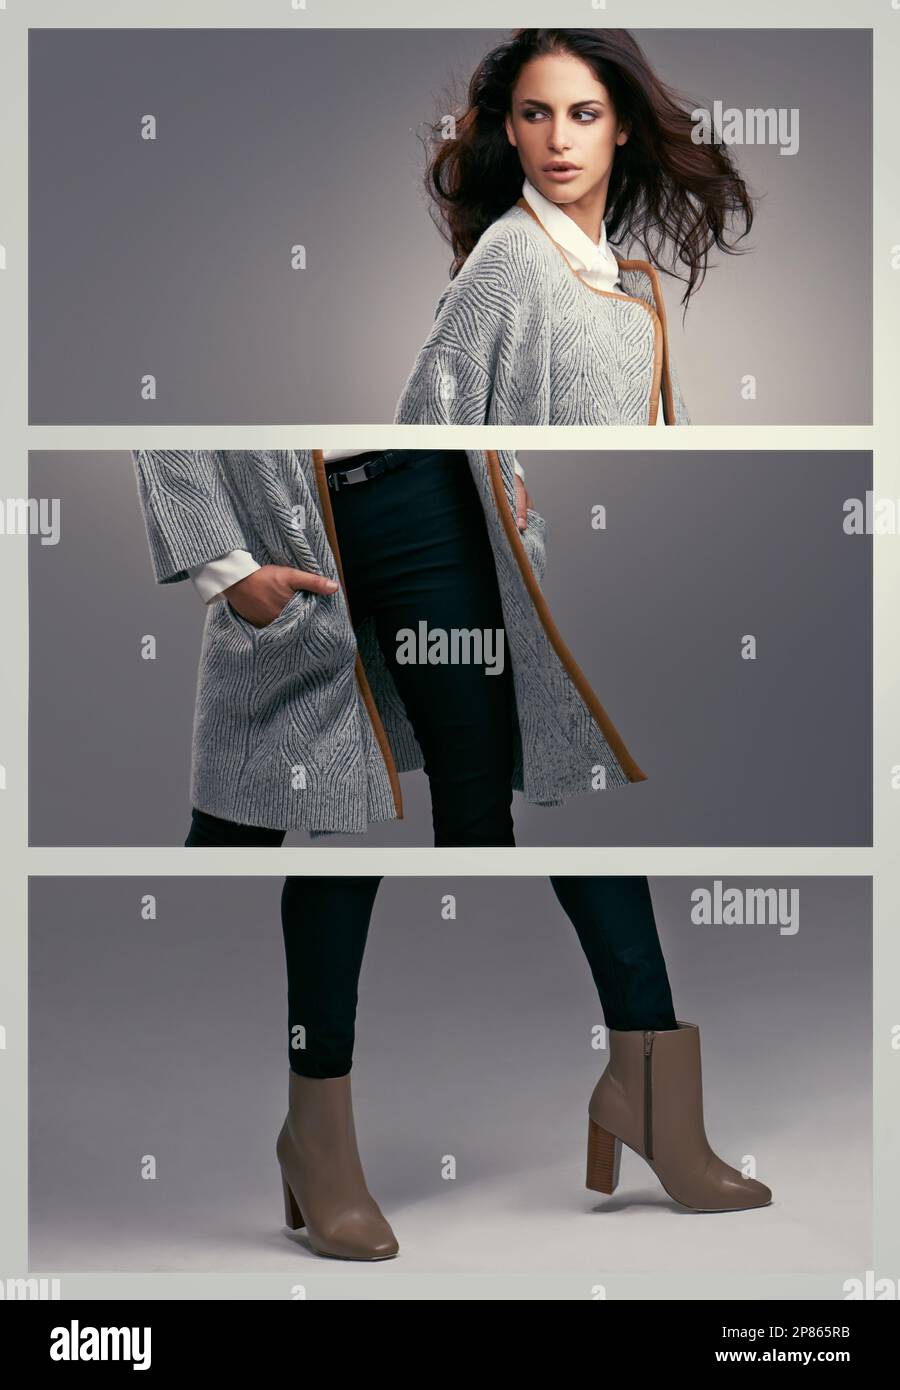 Tre lati di stile. Studio di una giovane donna vestita elegantemente su uno sfondo grigio. Foto Stock